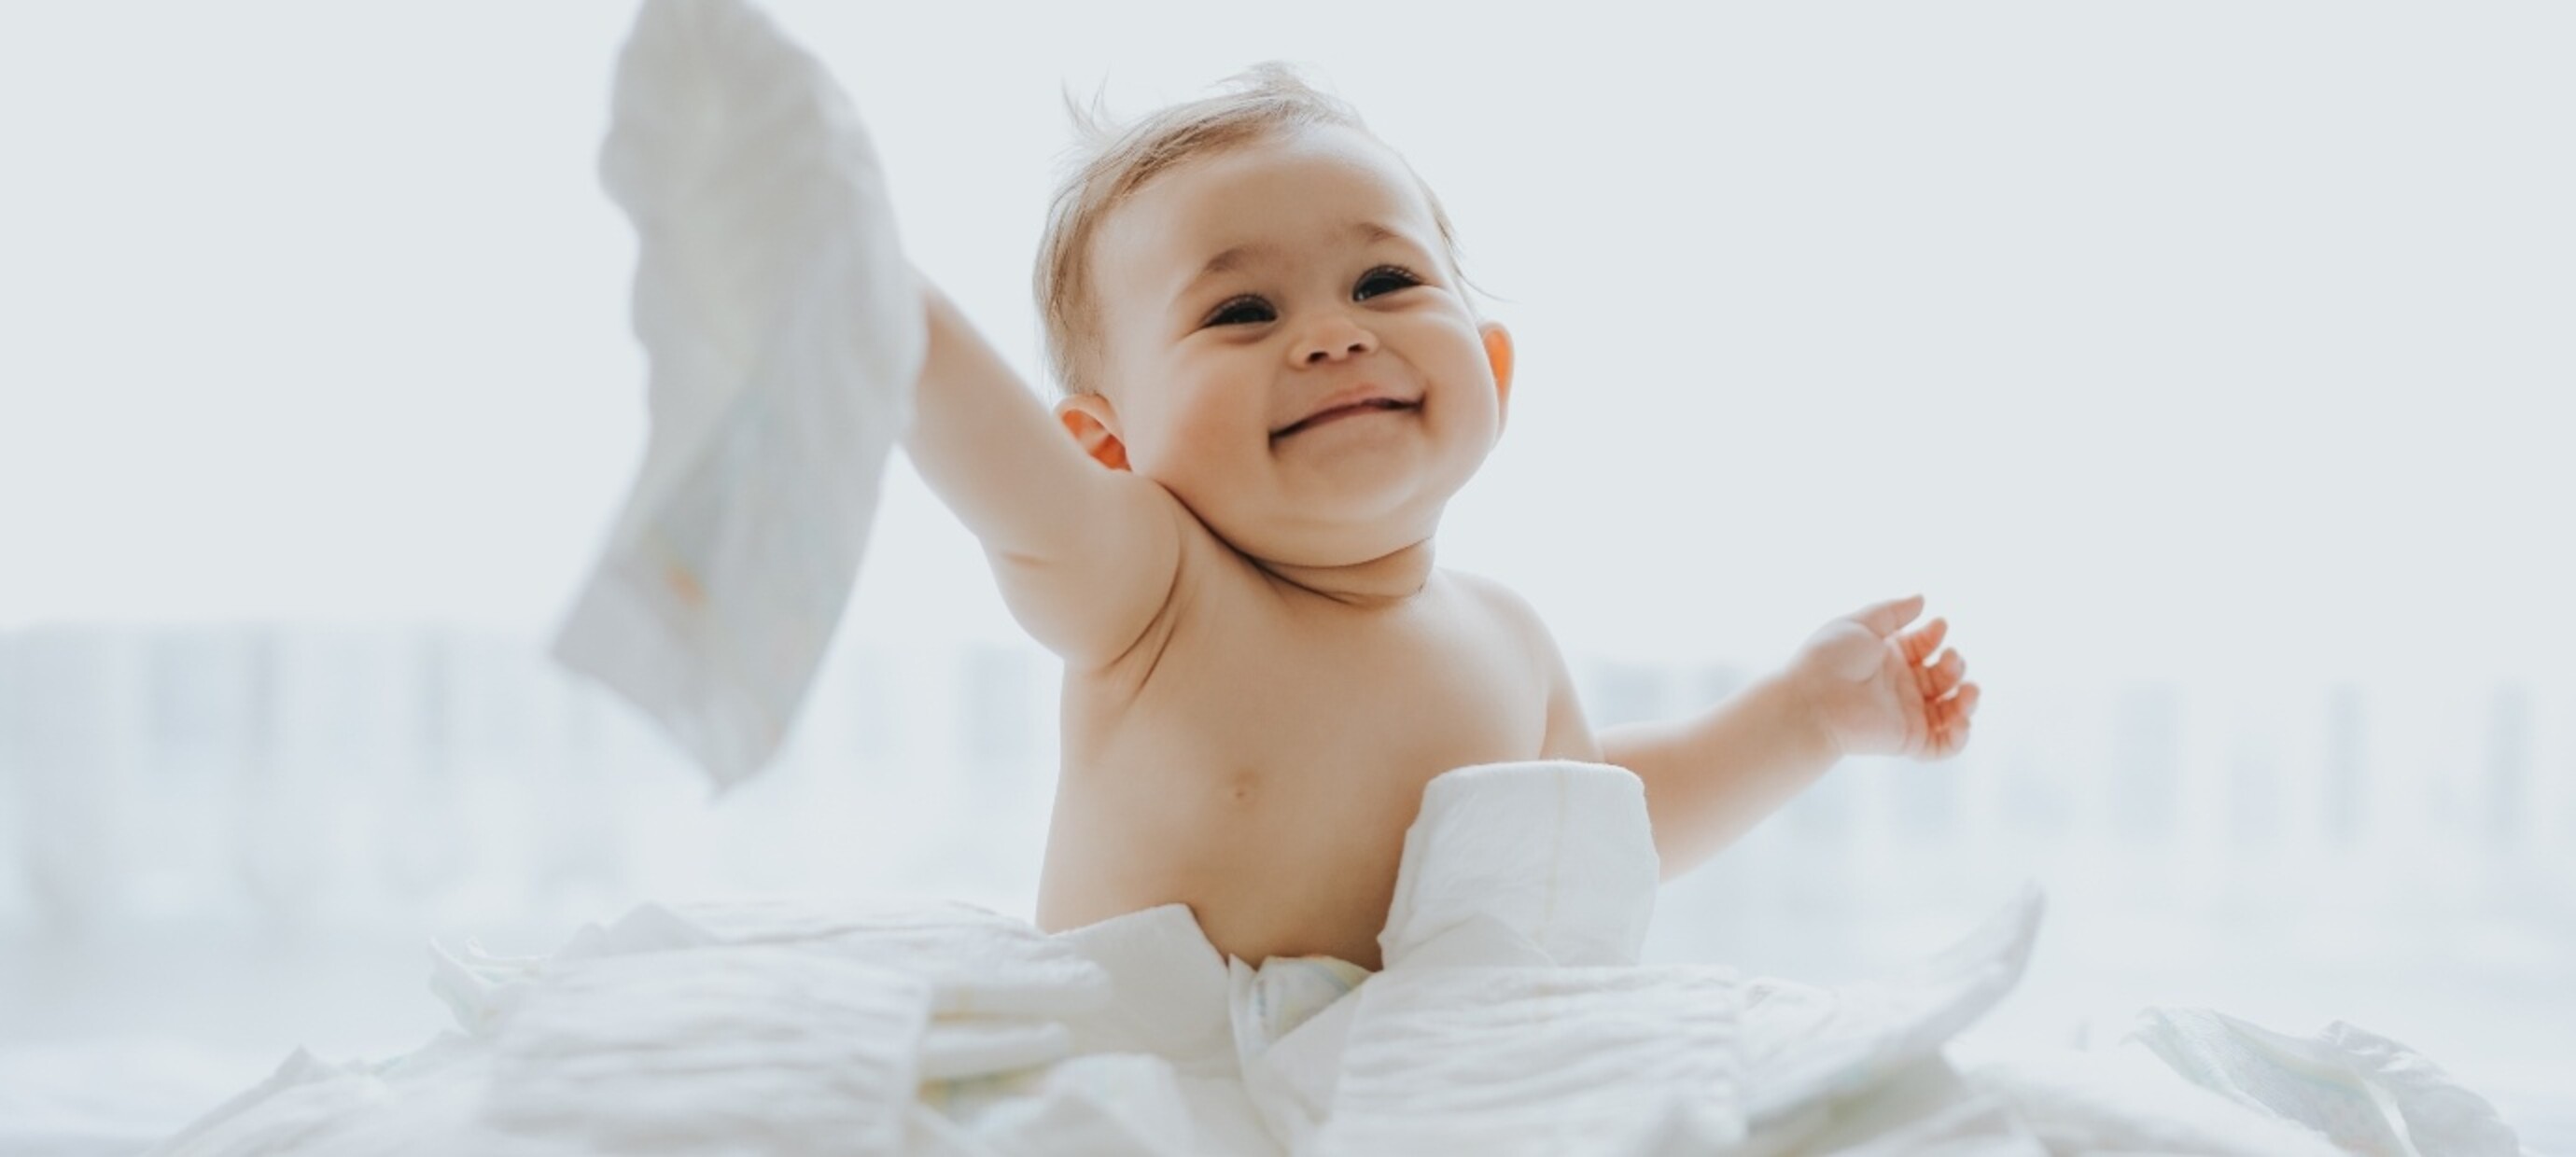 9 Luierhacks voor het verschonen van je baby